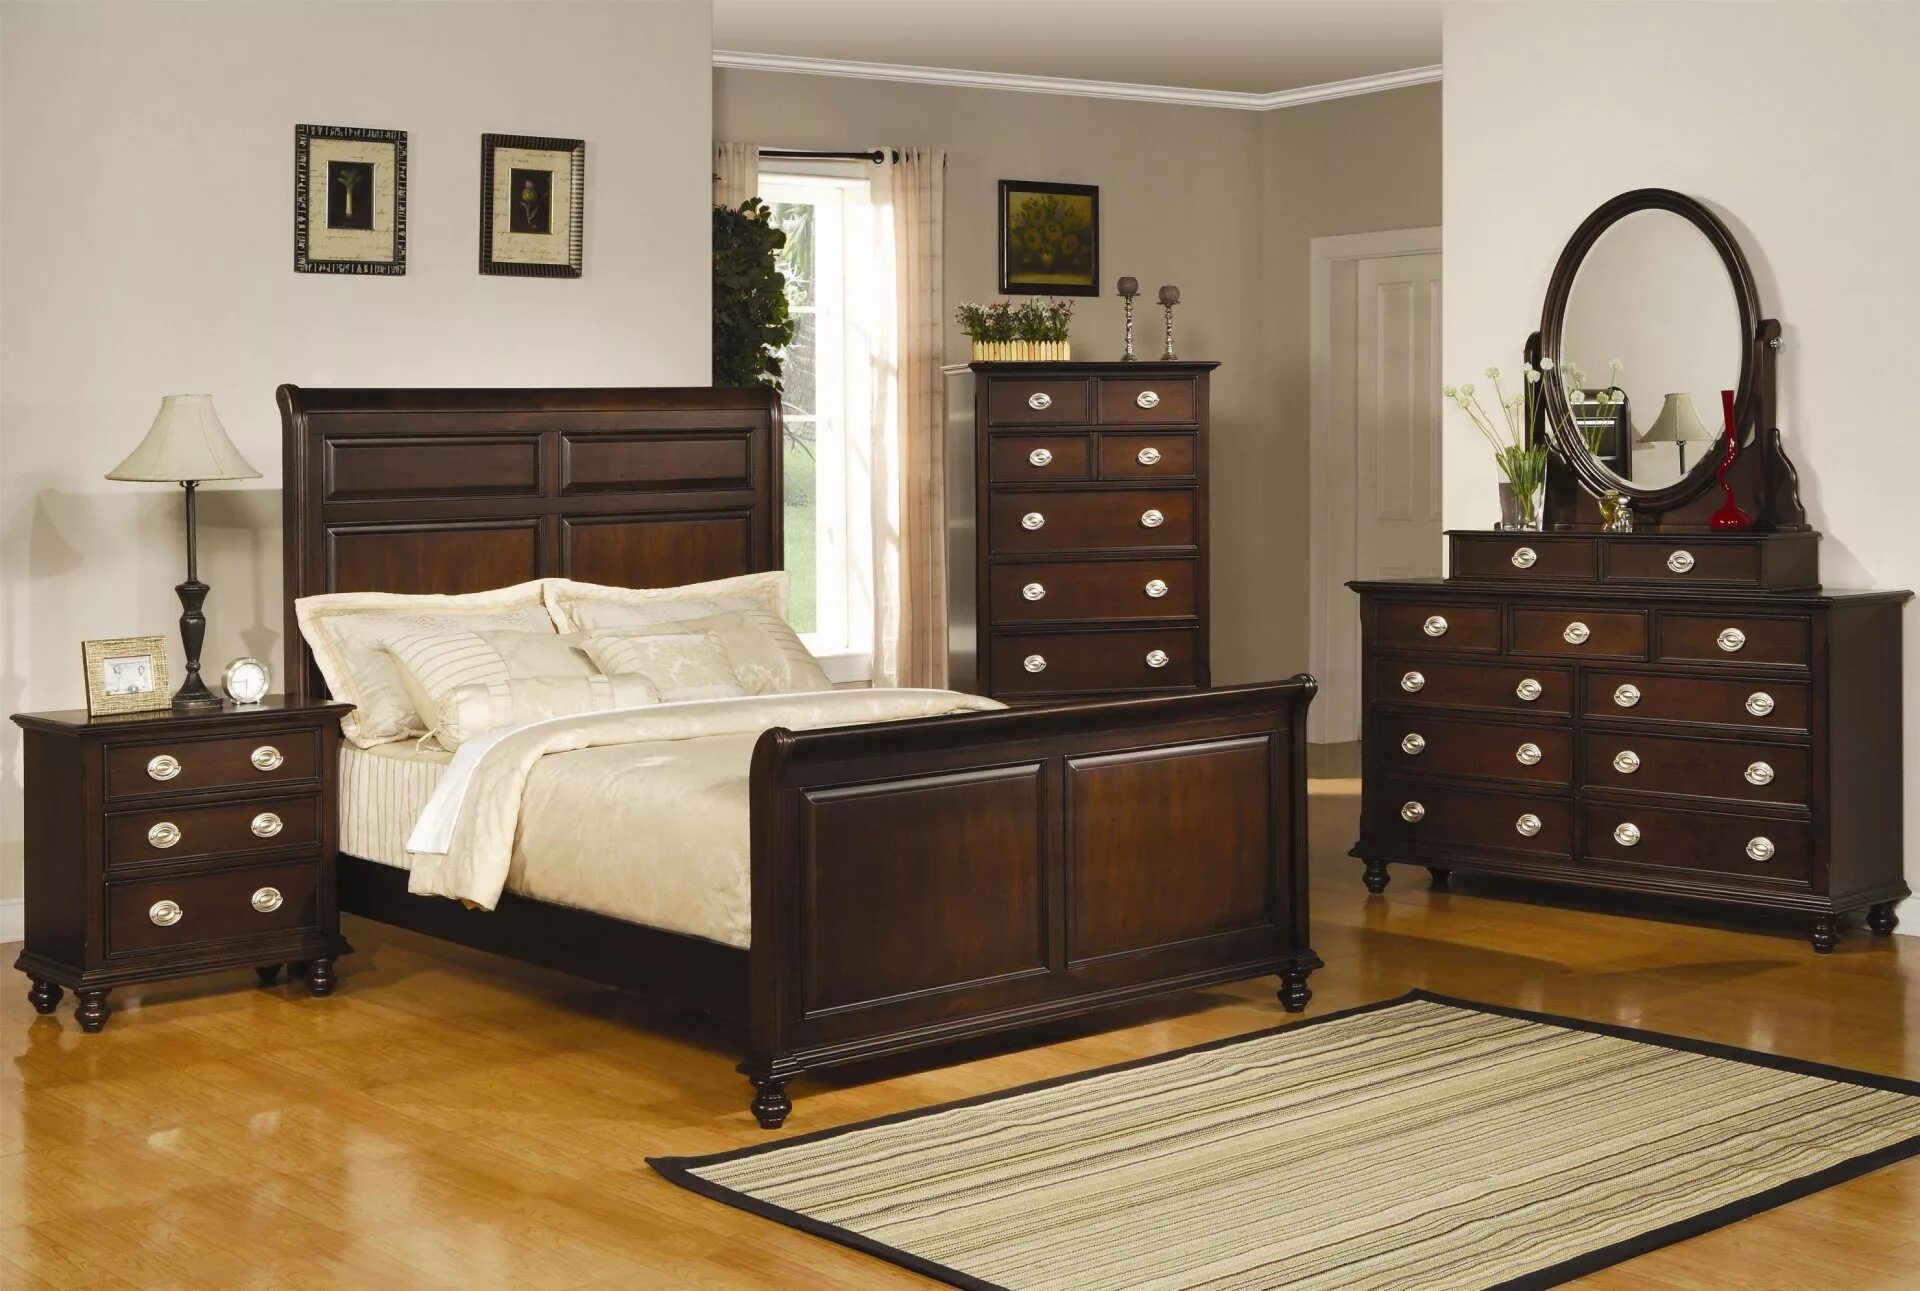 Комната коричневая мебель. Спальня с темной мебелью. Комната с коричневой мебелью. Спальня с коричневой мебелью. Темная мебель.